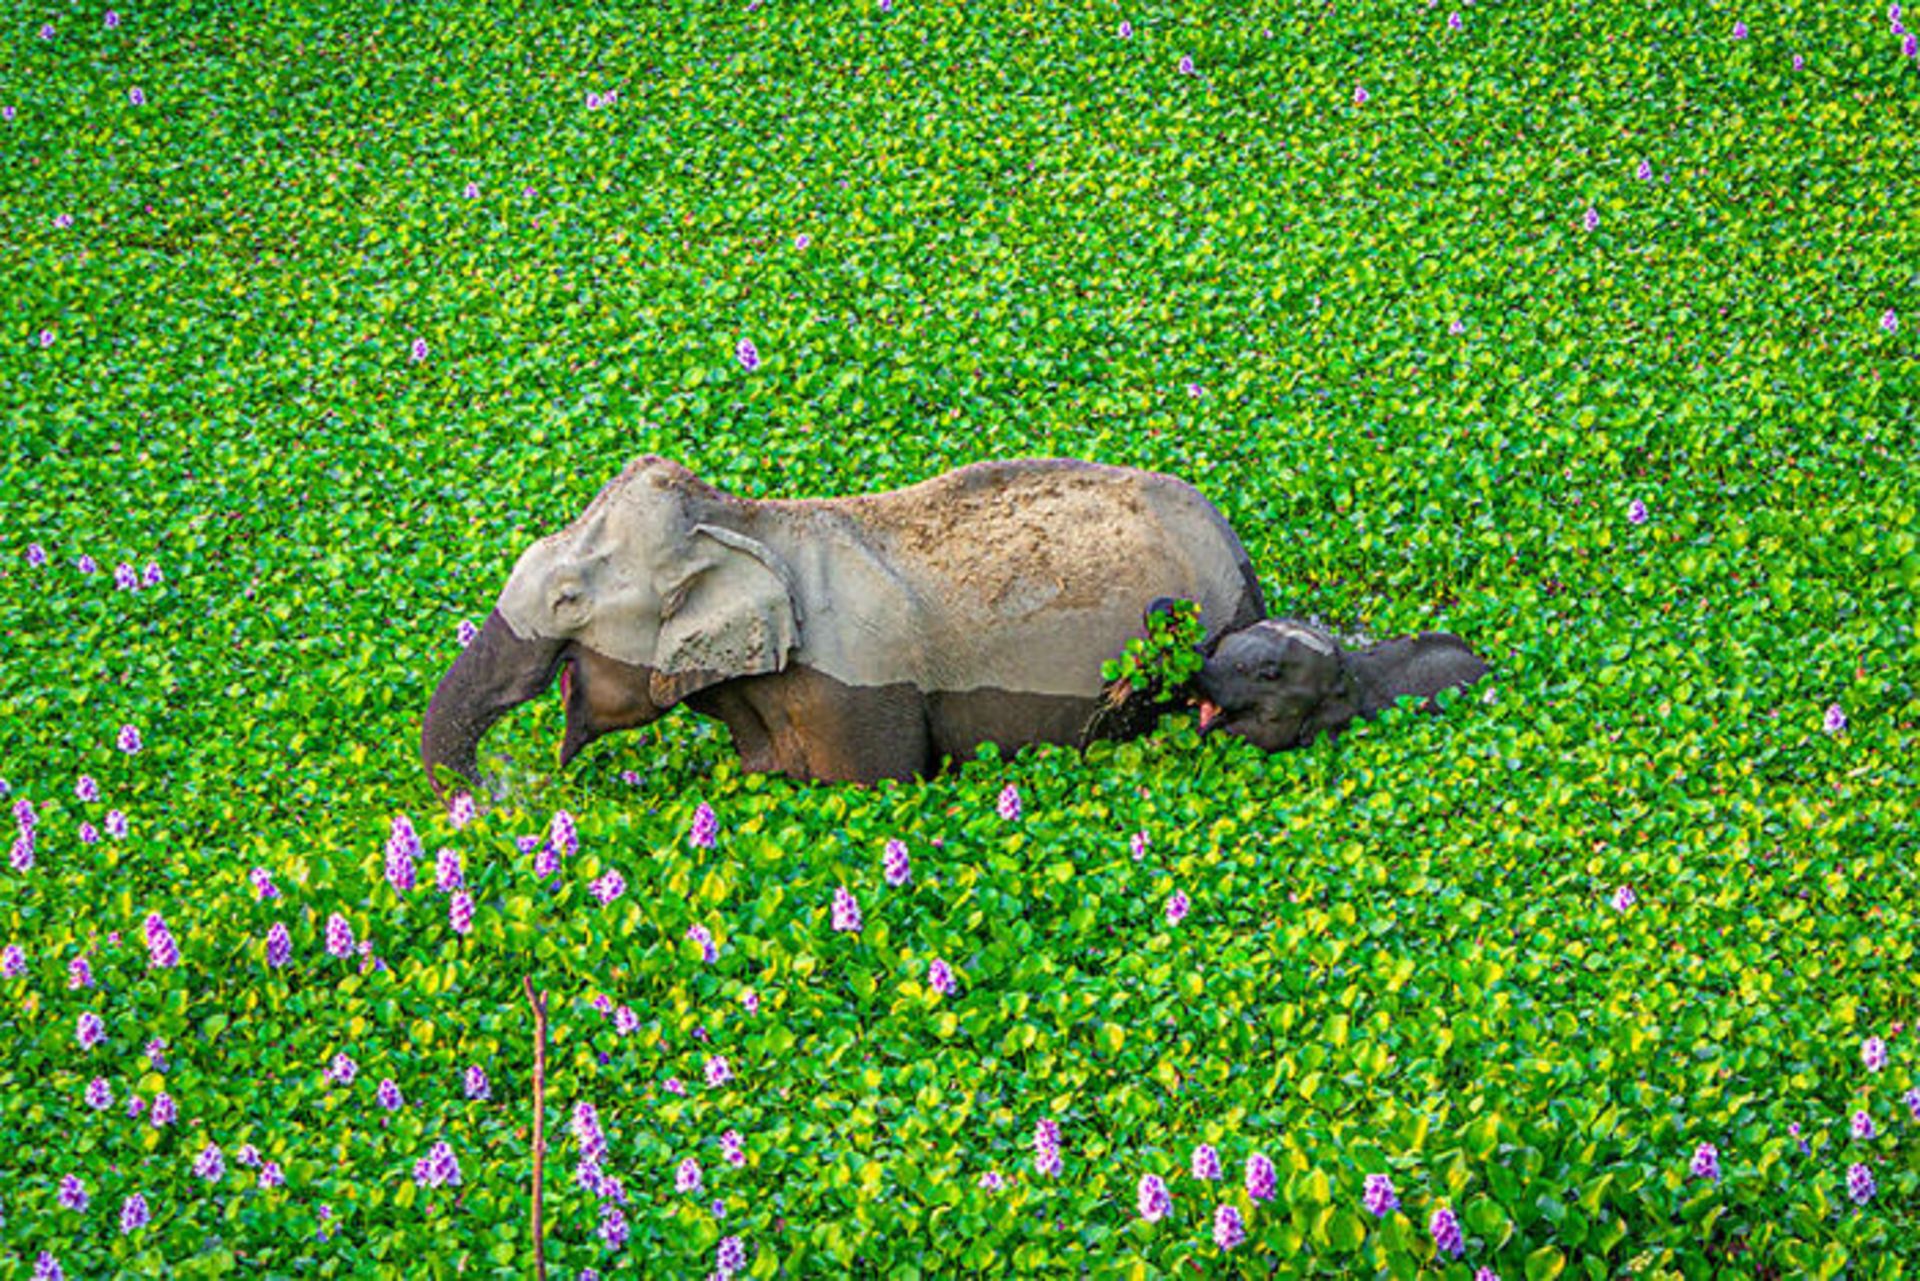 فیل و بچه فیل خیس در بین دشت سبز